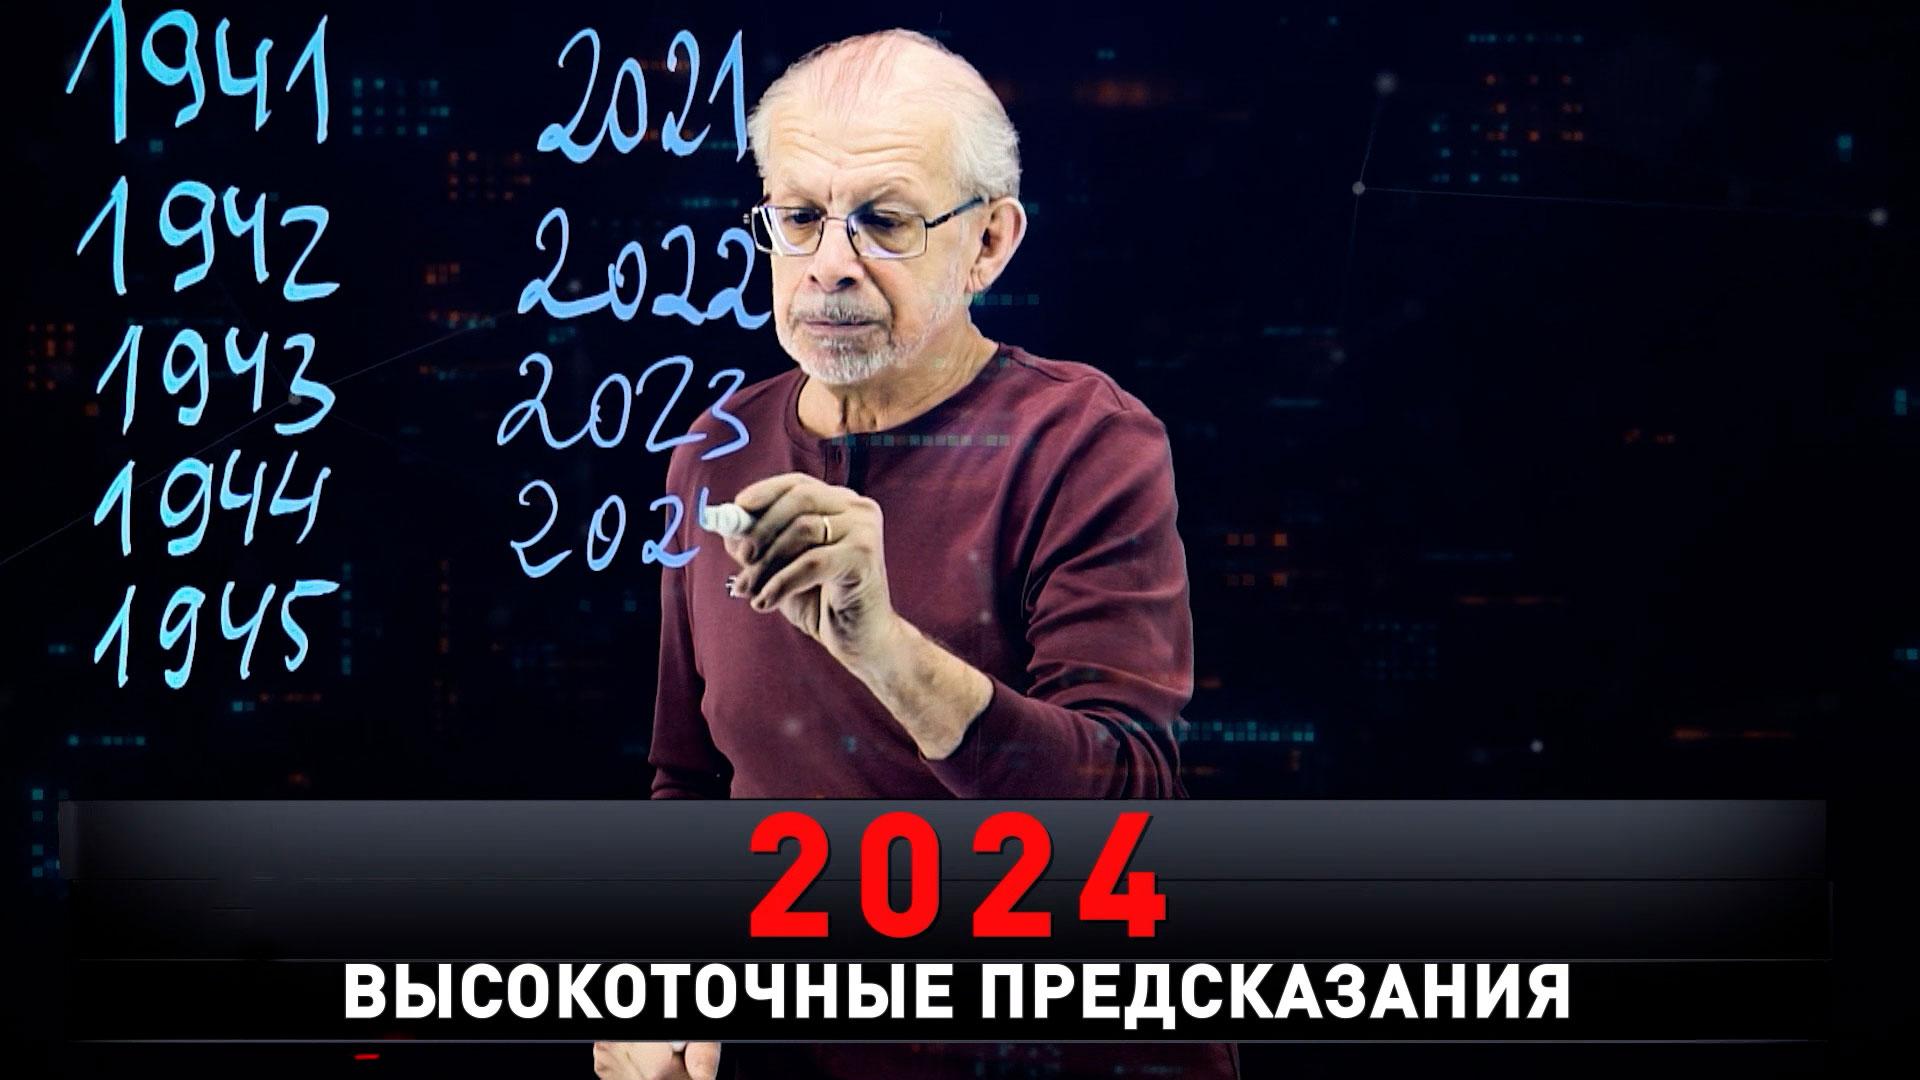 «2024. Высокоточные предсказания» | Все переломные даты и роковые числа | «Новые русские сенсации»